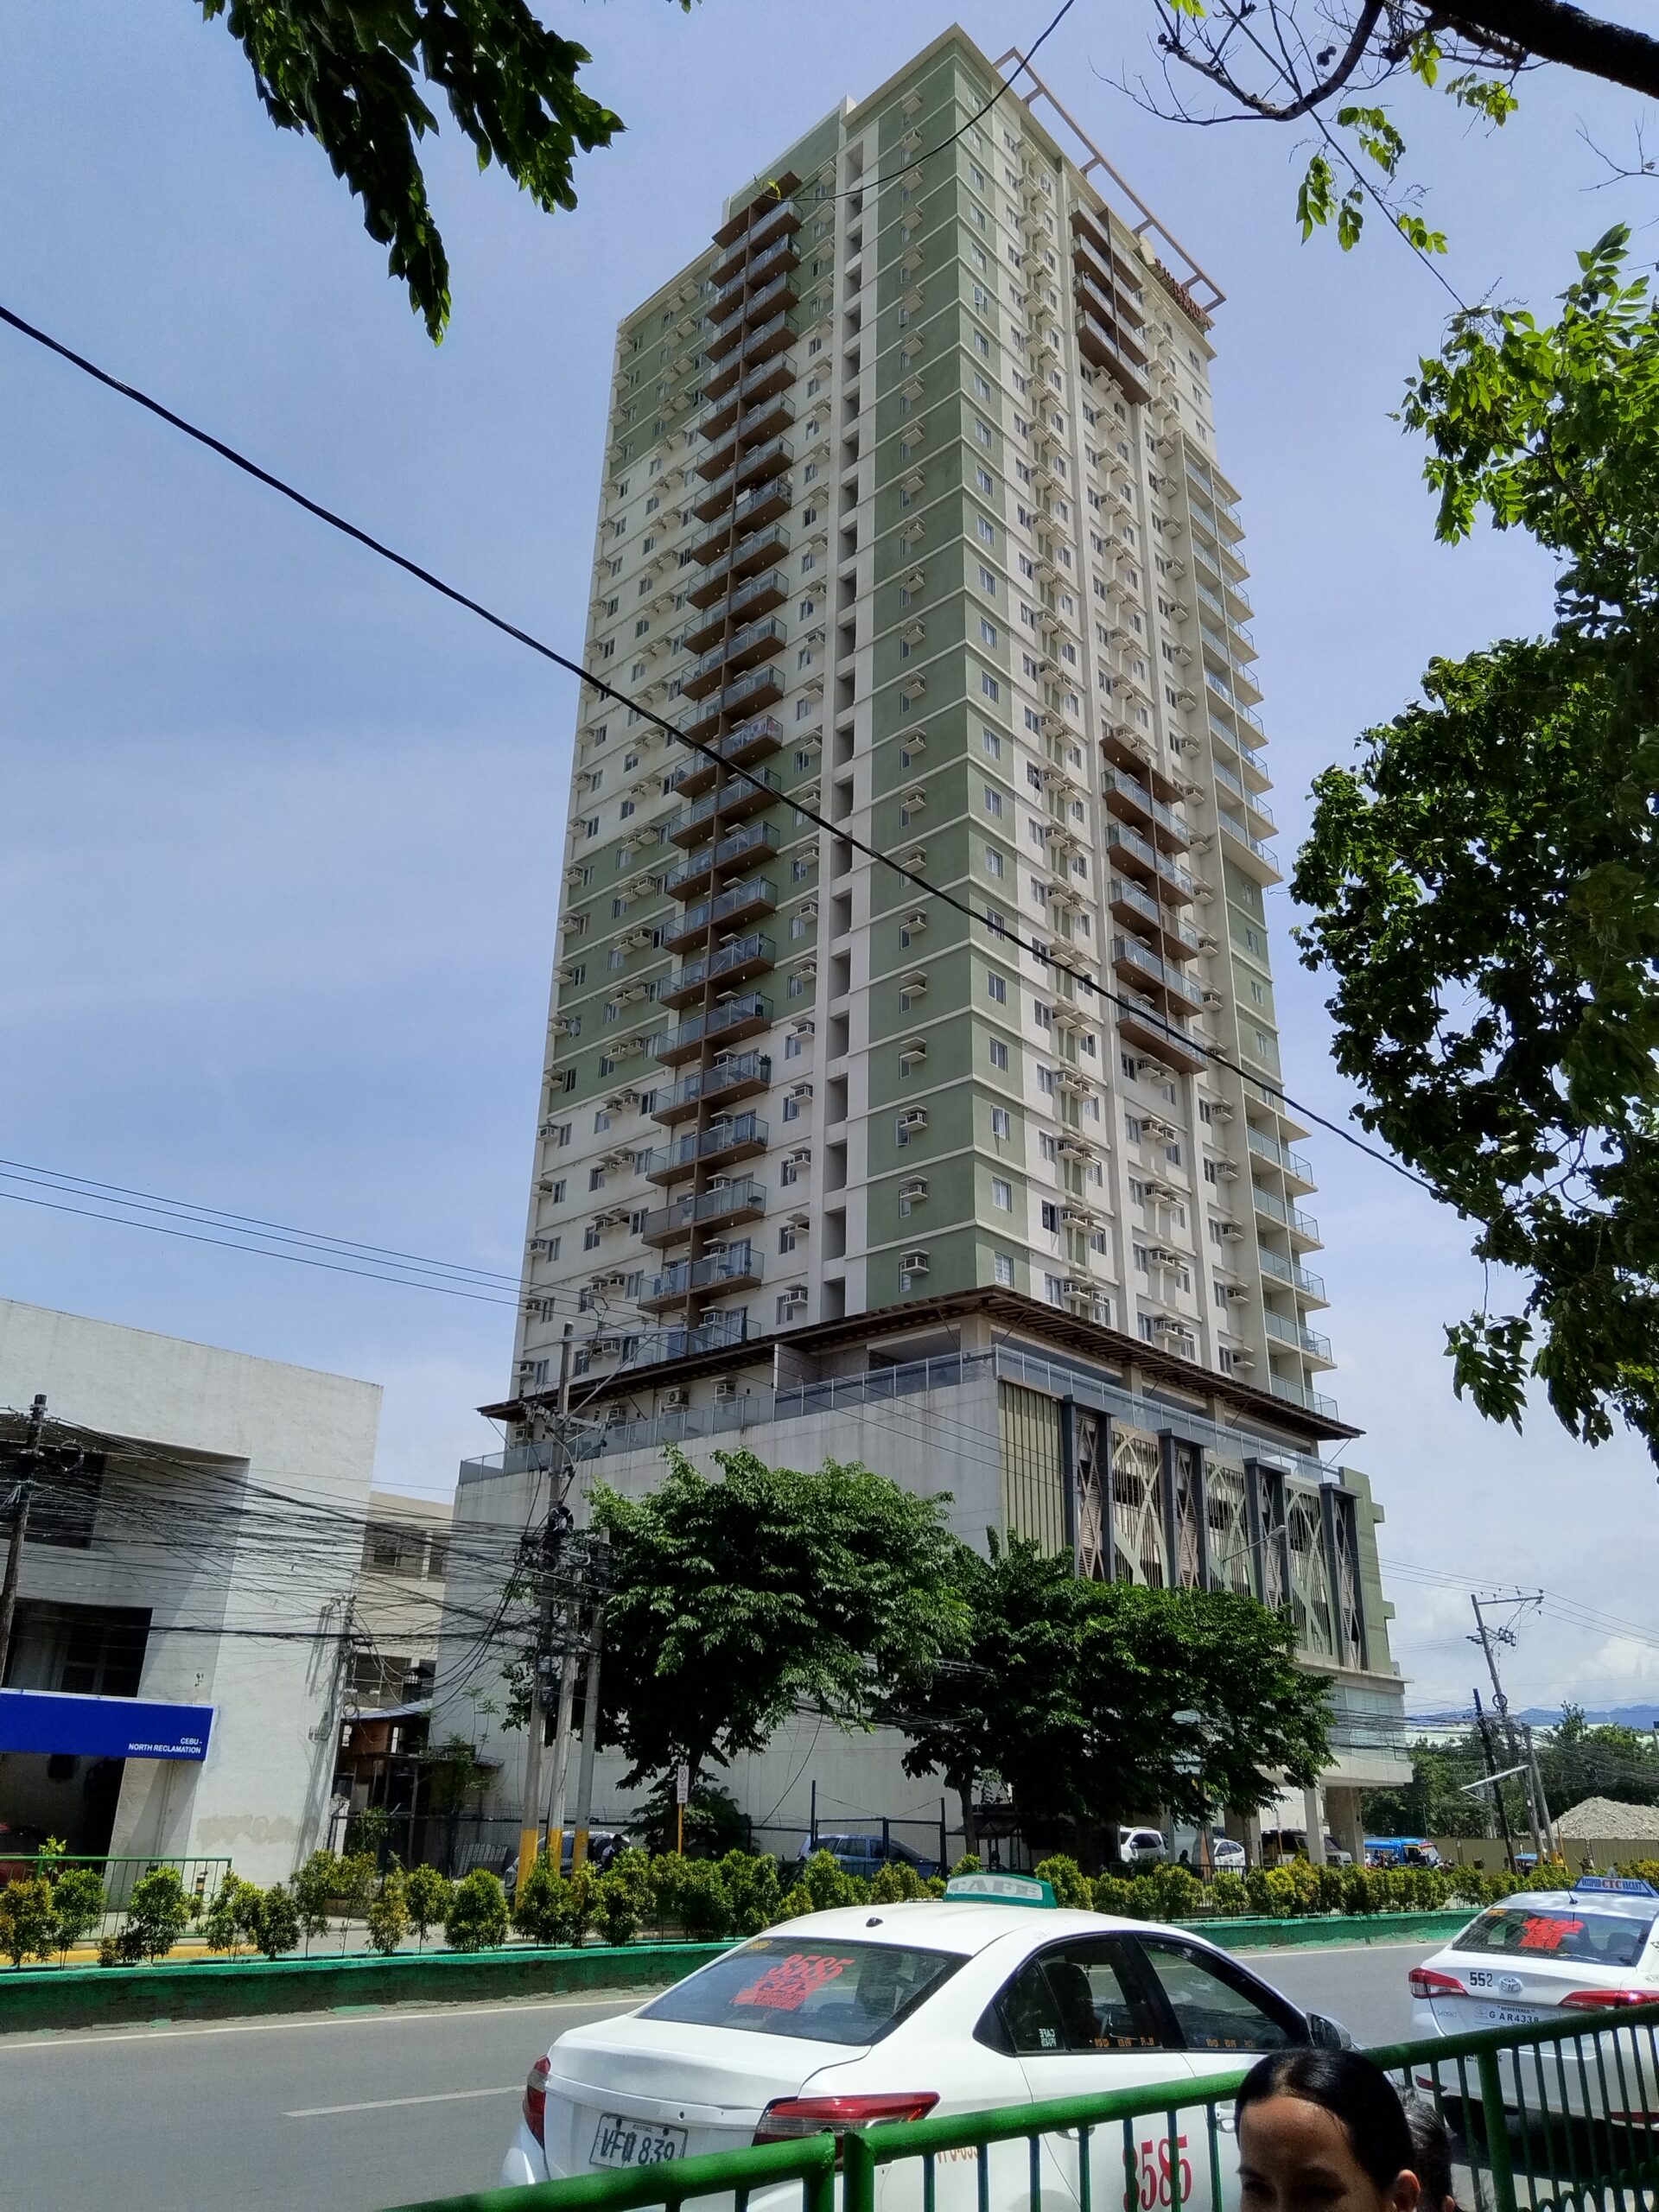 Sunvida Tower condominium for rent or for sale in Cebu City near SM Mabolo